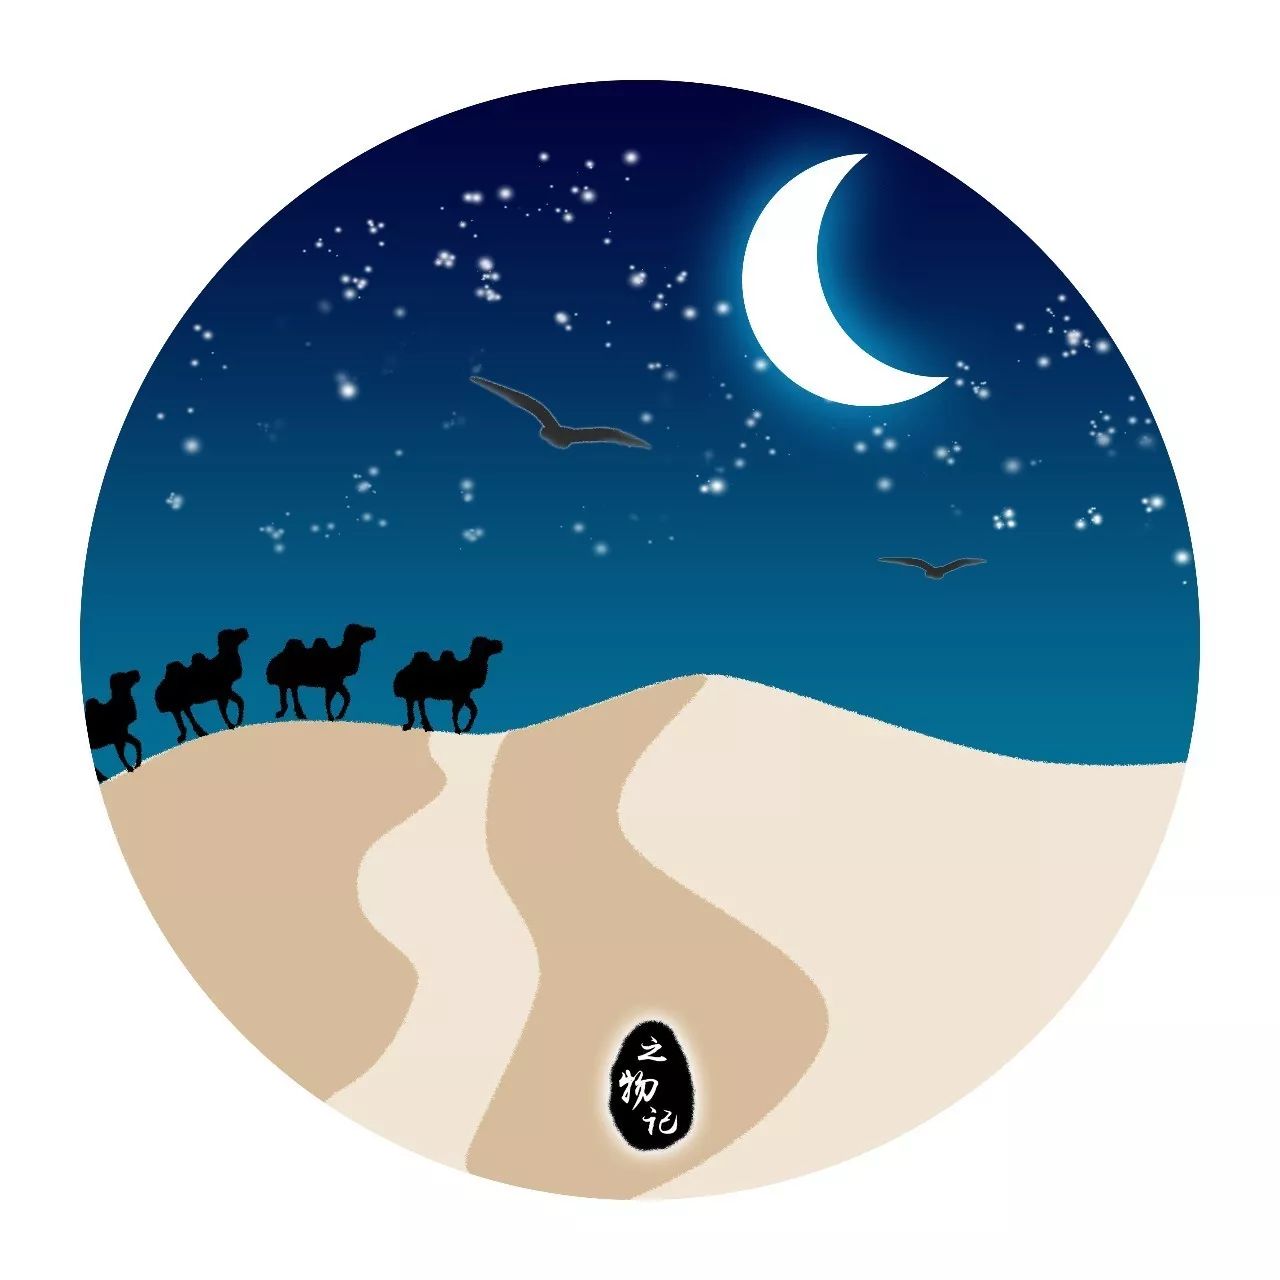 插画丨大漠沙如雪,燕山月似钩